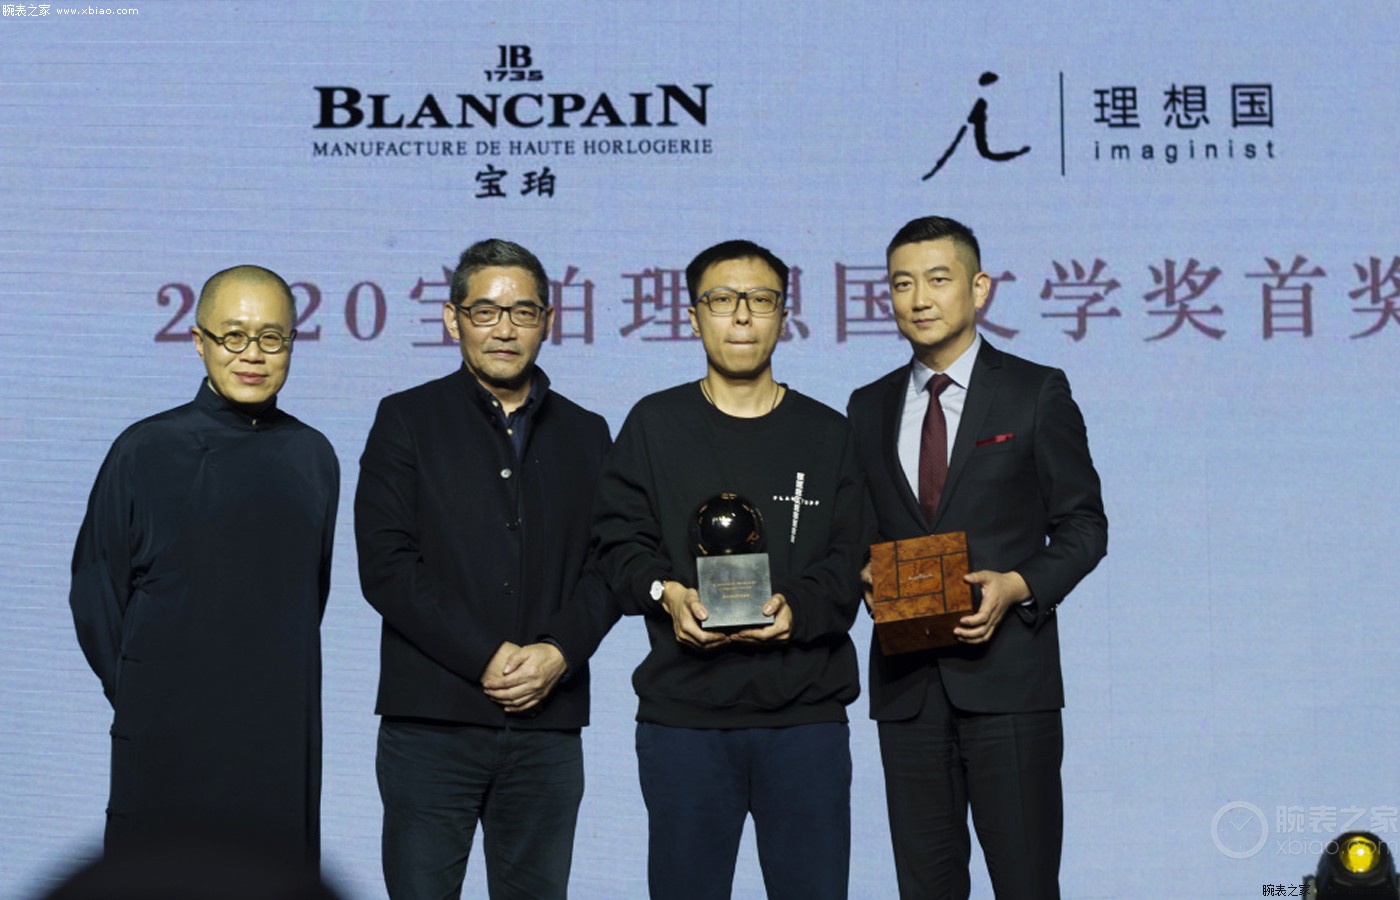 第三届宝珀理想国文学奖颁奖典礼在北京举行，双雪涛以作品《猎人》摘得首奖